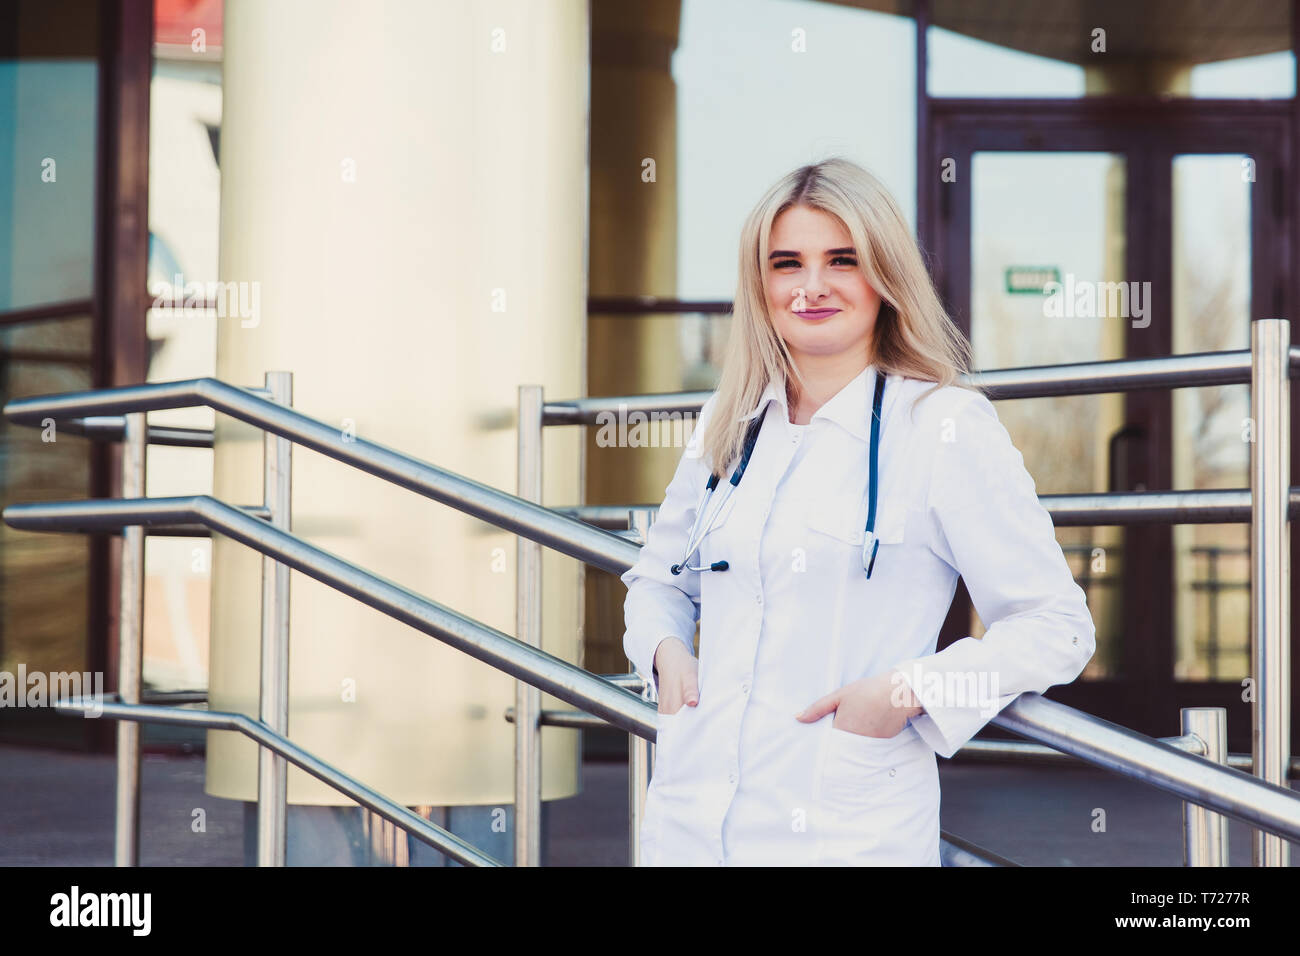 Closeup portrait of smiling confident female friendly, médecin, professionnel de la santé dans scrubs avec stéthoscope, debout à l'extérieur de l'hôpital backgroun Banque D'Images